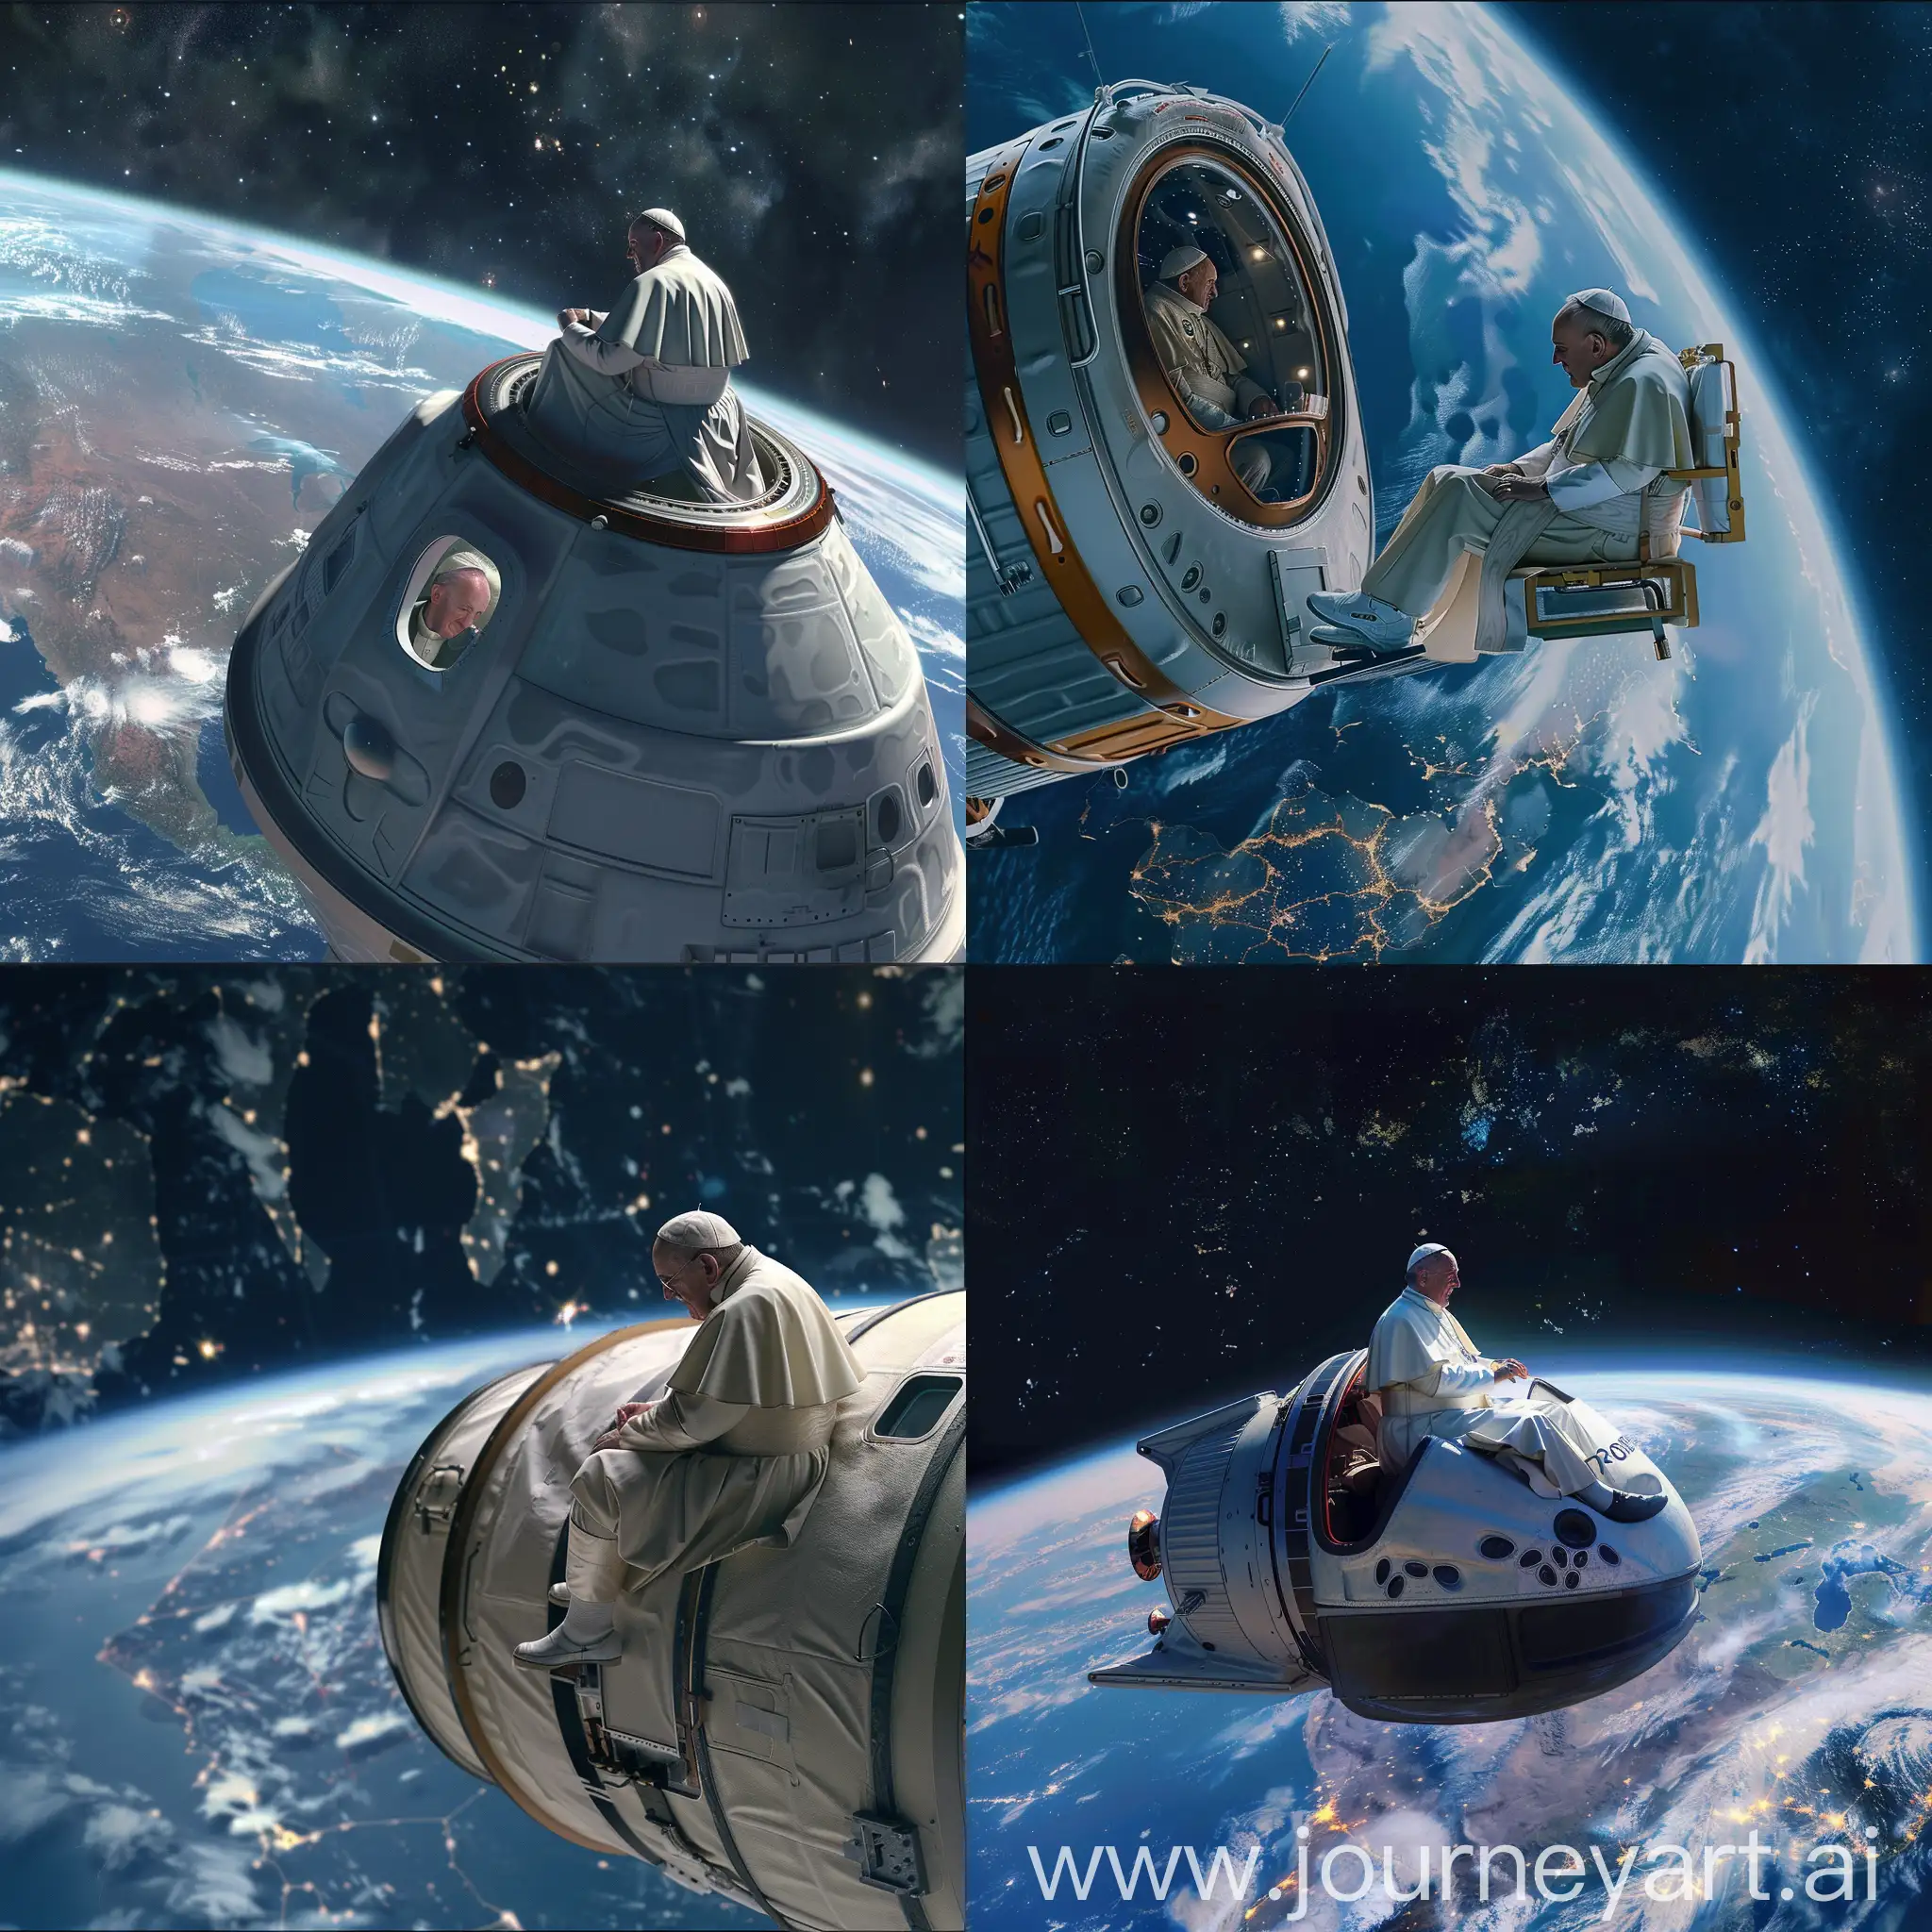 le pape assis sur une capsule spacial en orbite autour de la terre, entrain d'admirée la belle vue